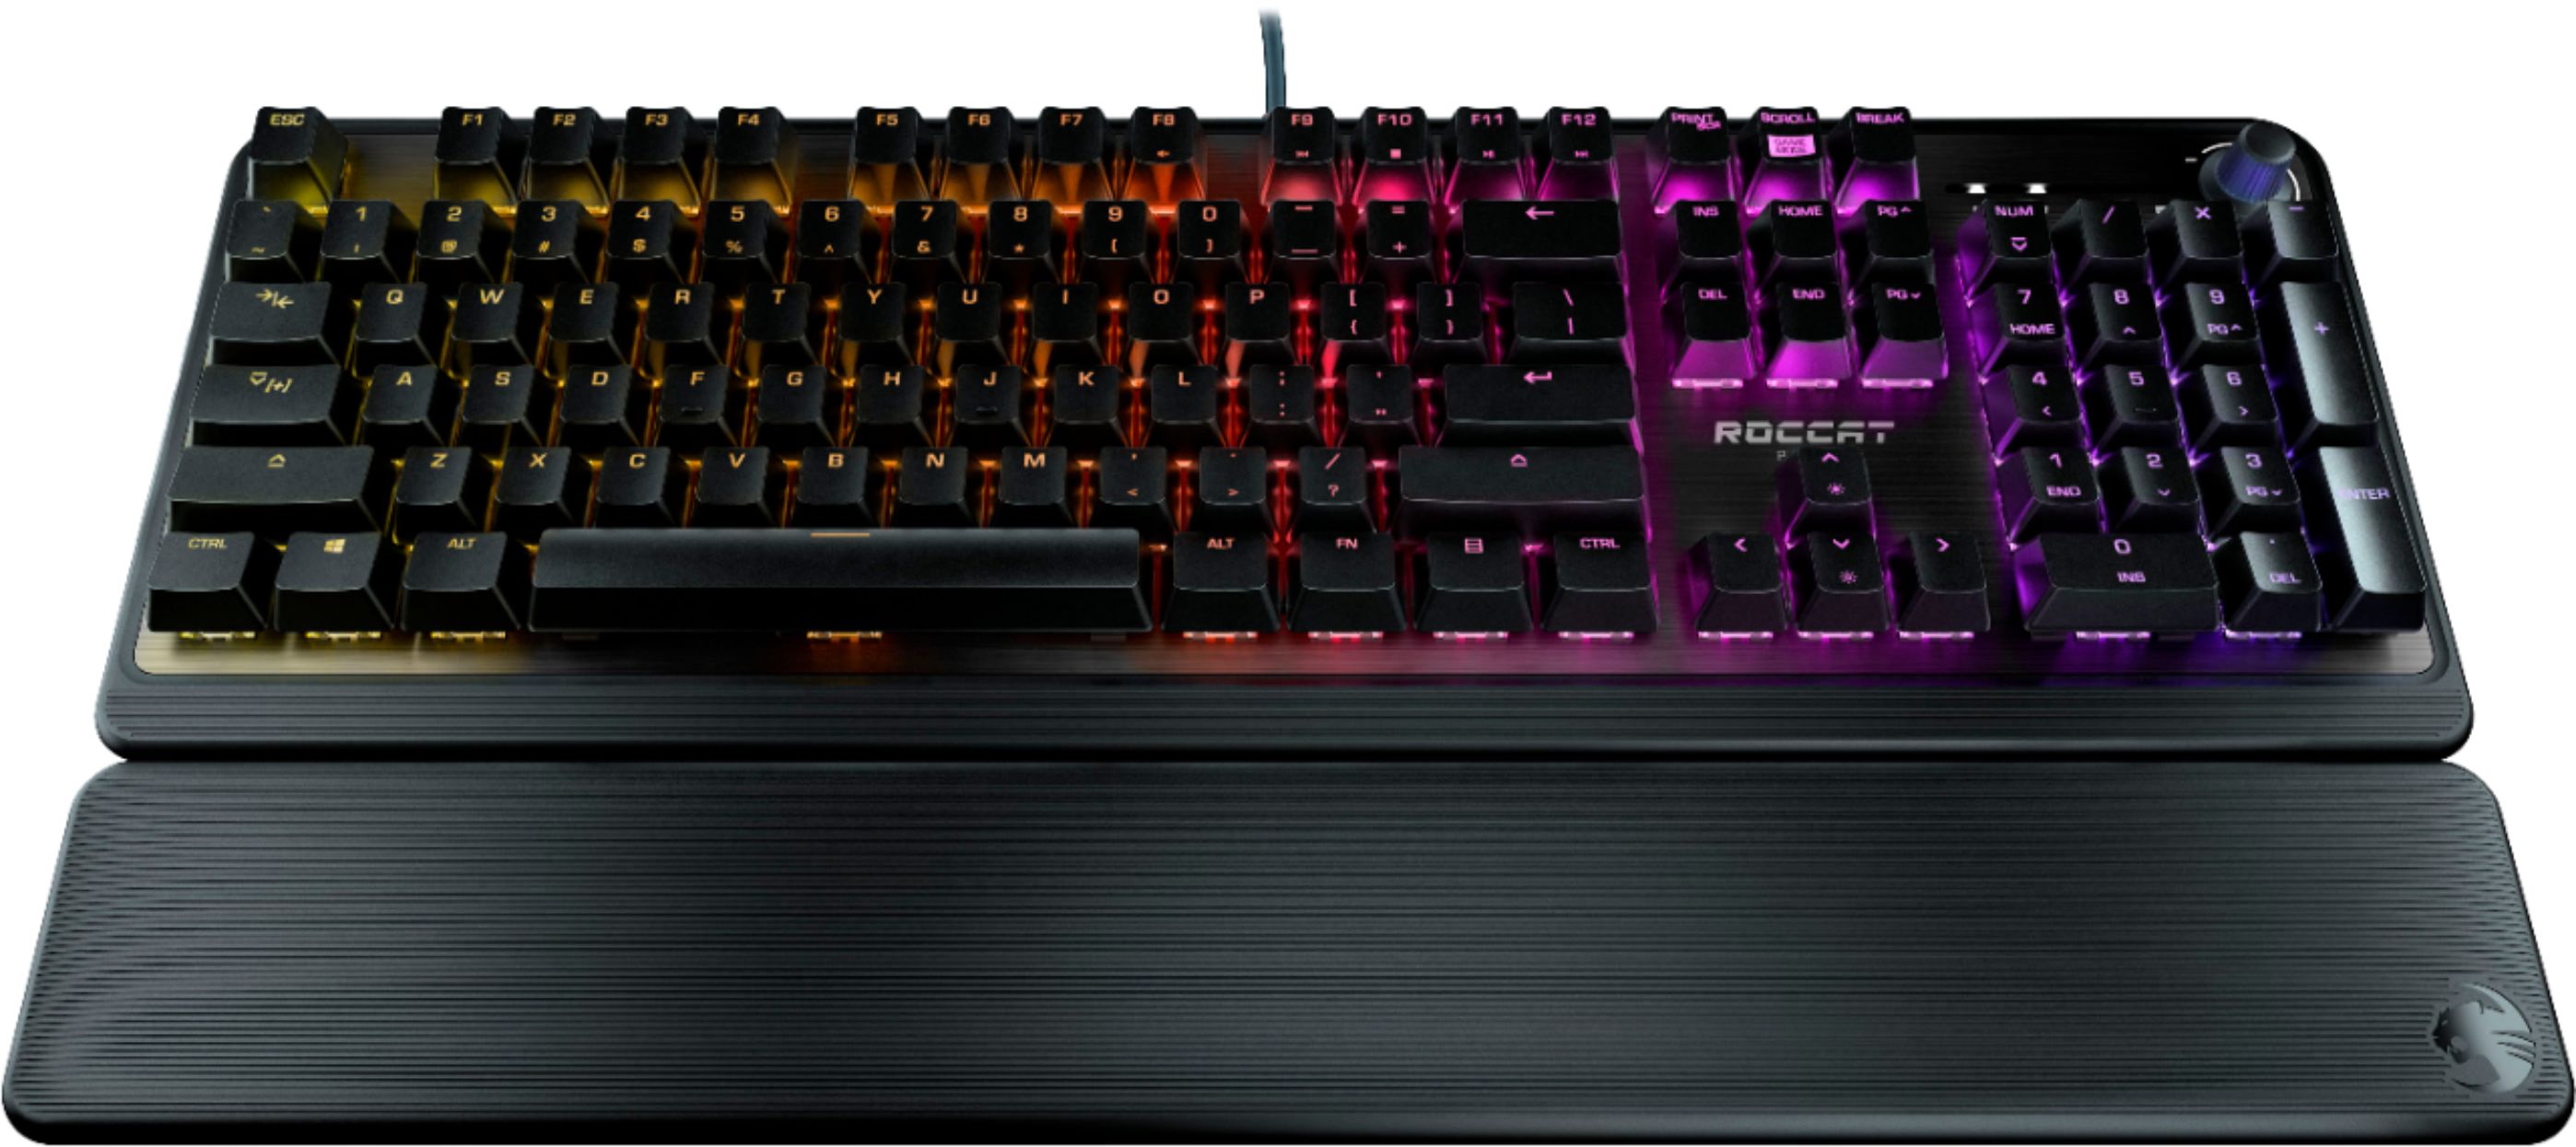 Gaming Keyboards - Best Buy